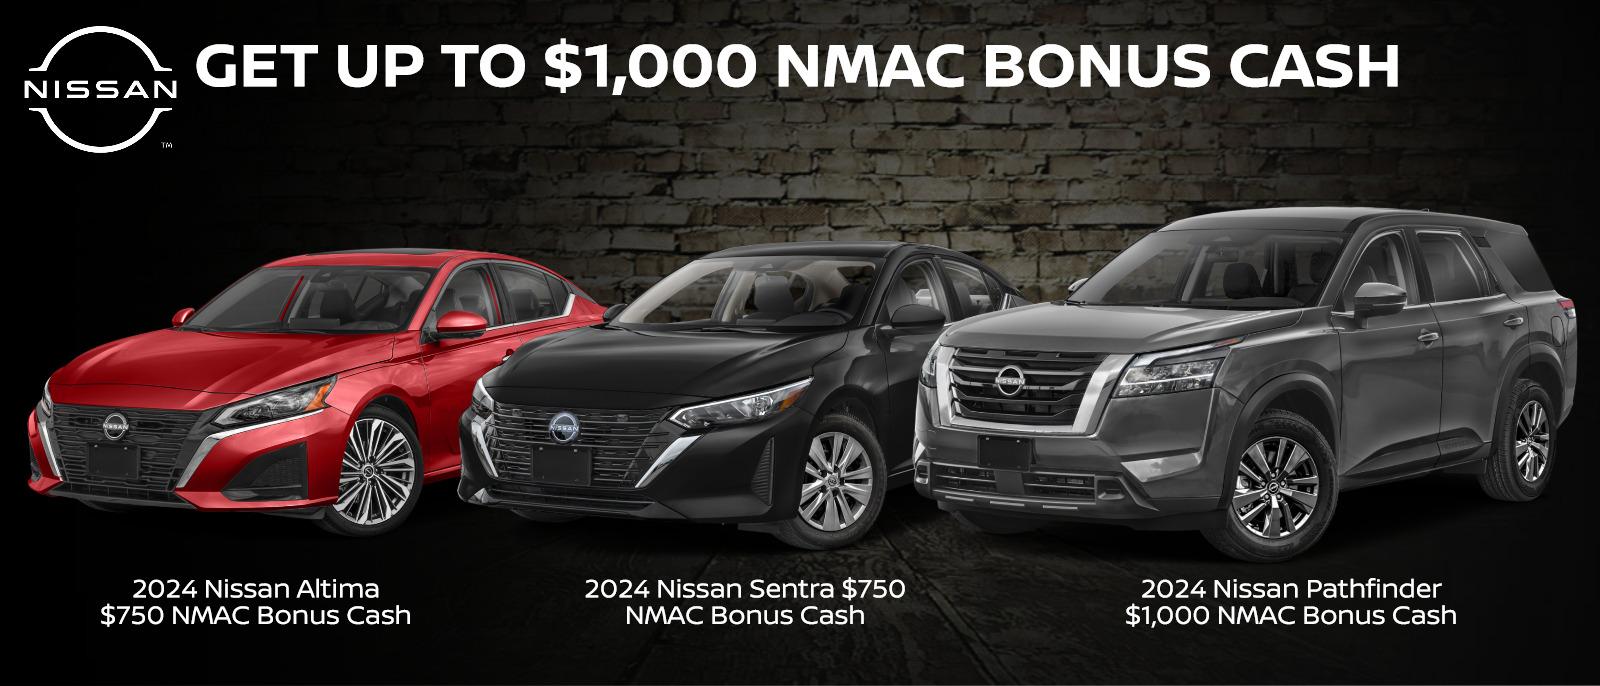 Up to $1,000 NMAC Bonus Cash